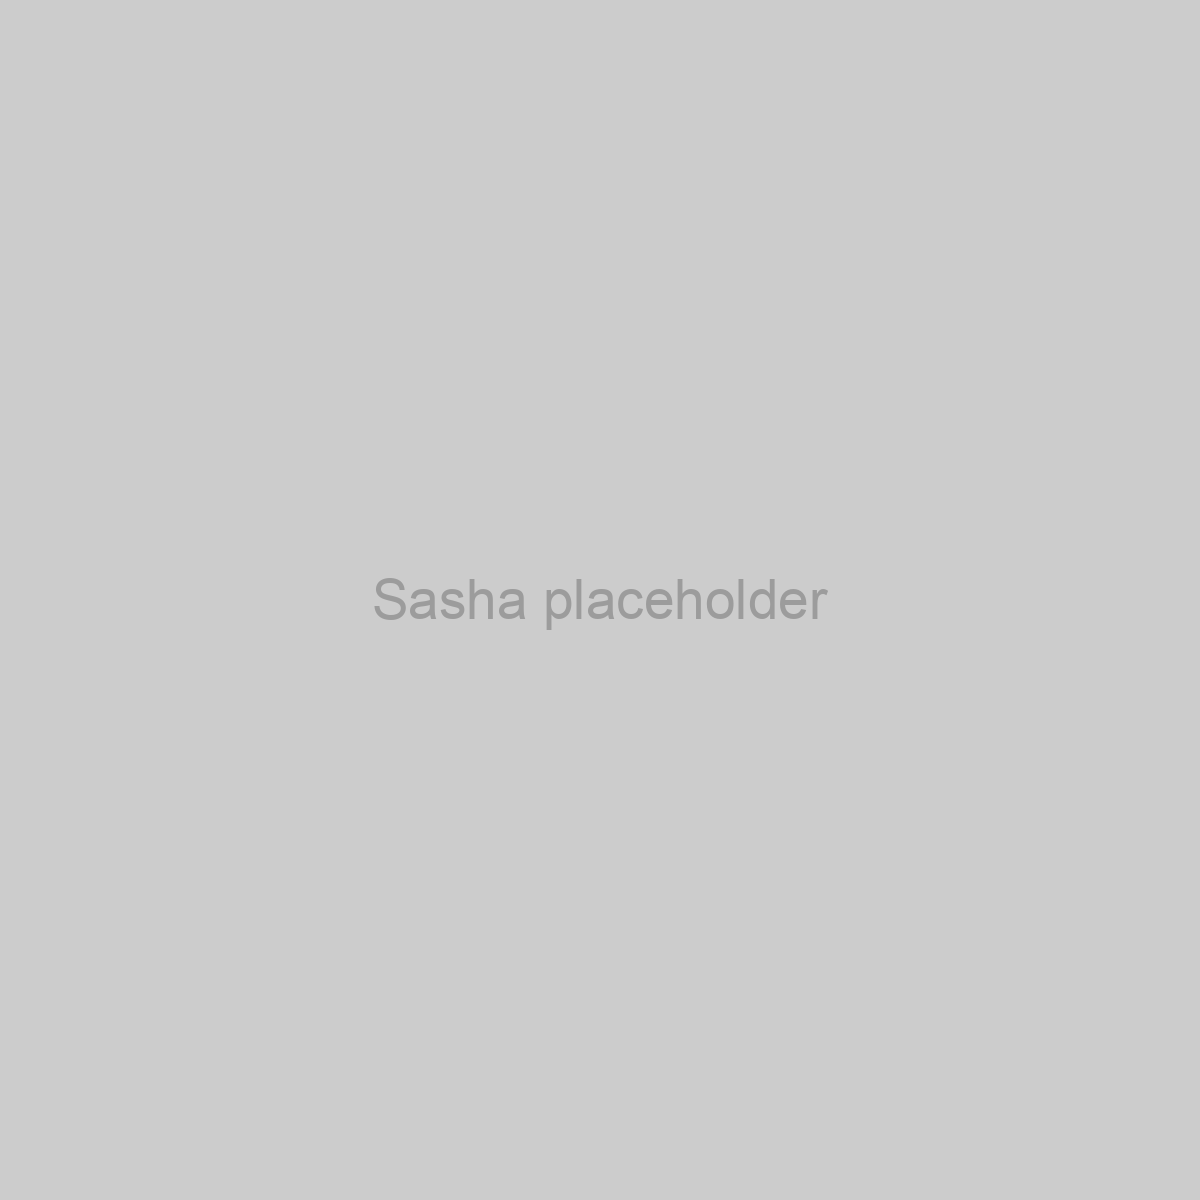 Sasha Placeholder Image